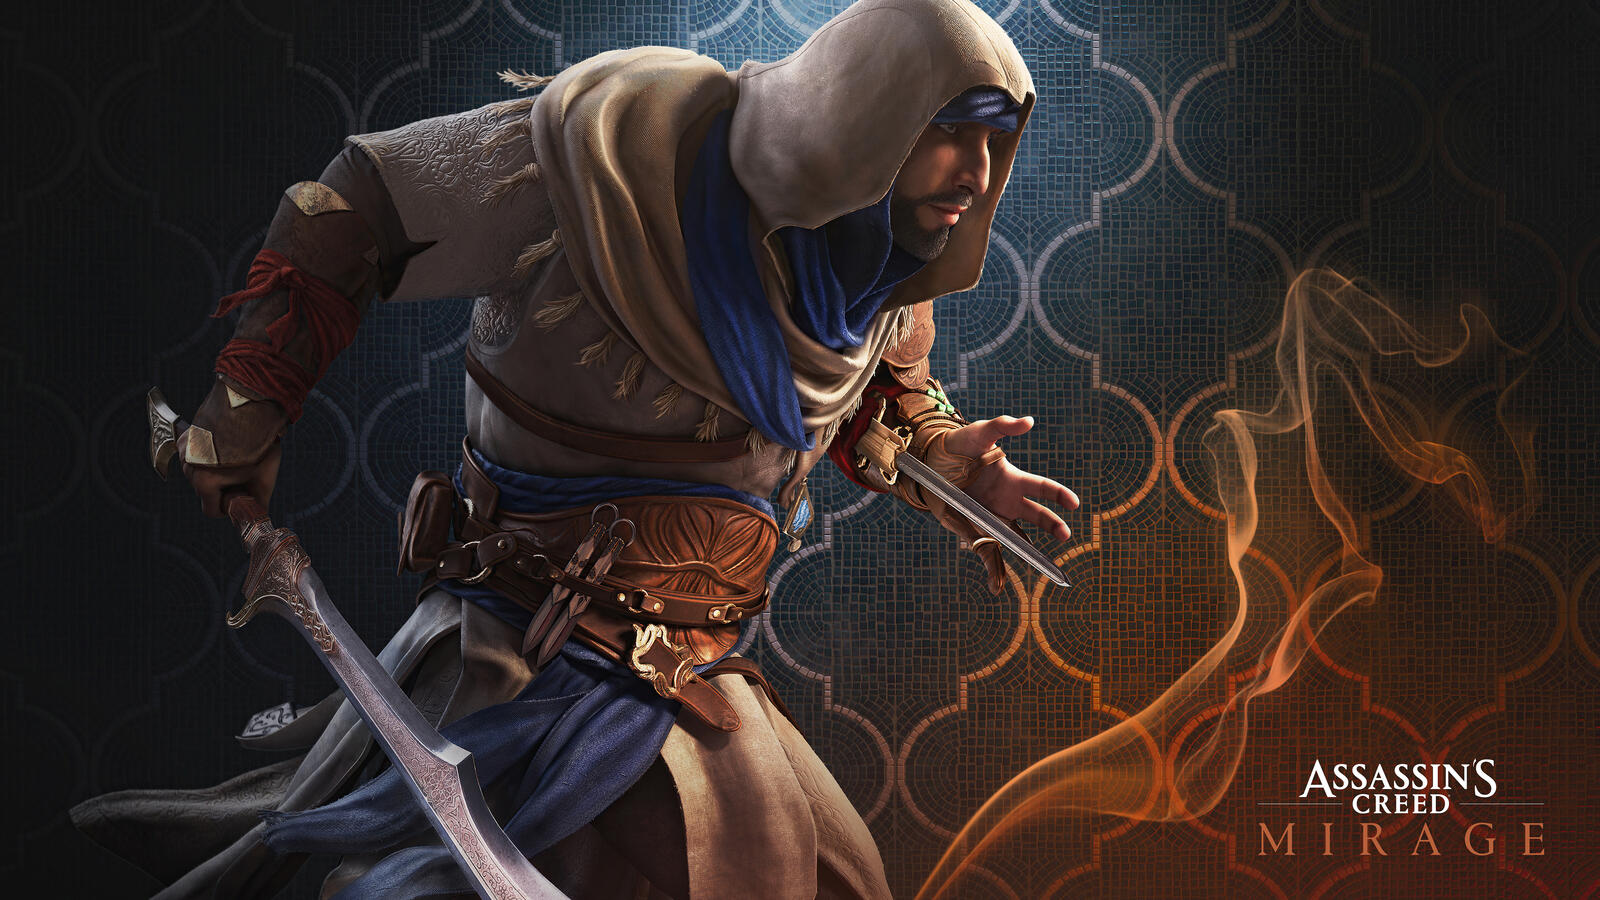 Картинка из игры assassins creed mirage 2023 года